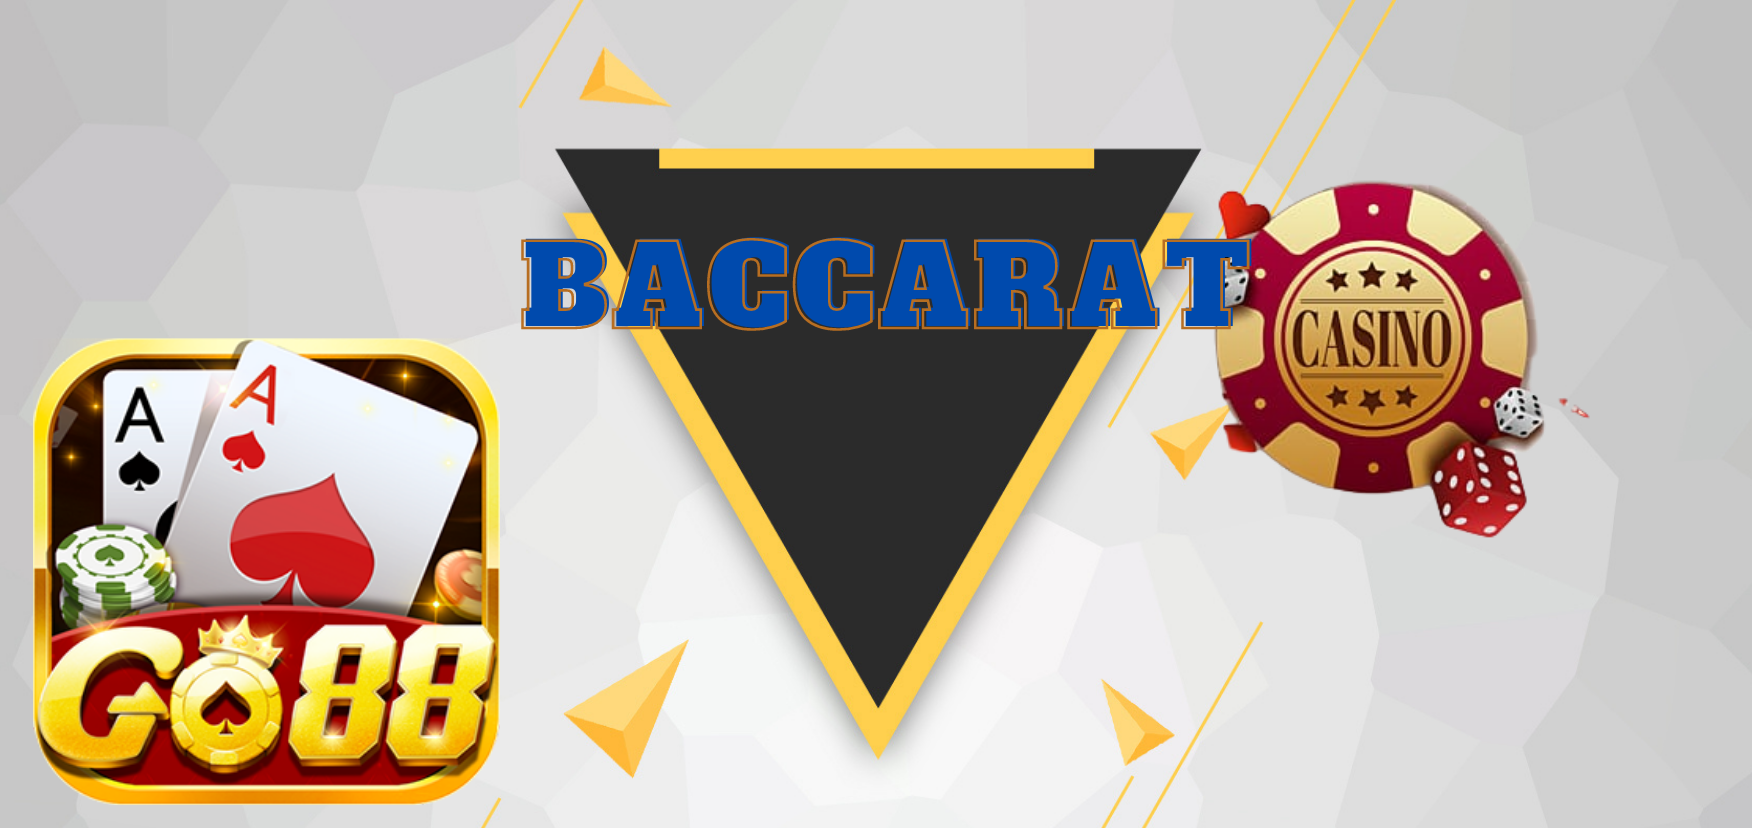 Tổng hợp những kinh nghiệm chơi Baccarat tại GO88